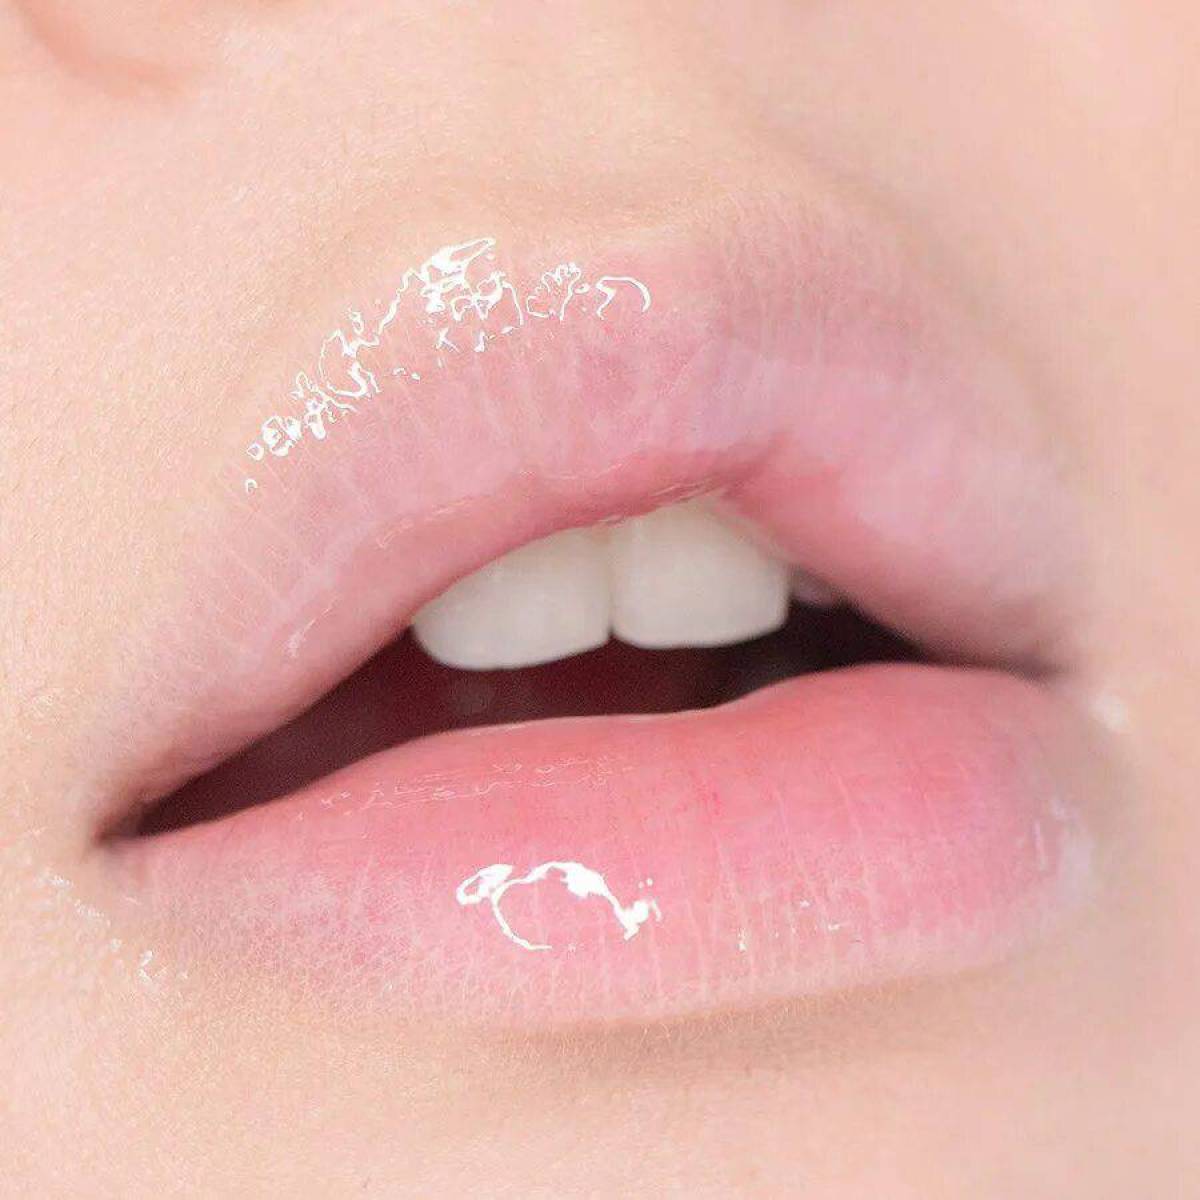 губы без помады фото женские пухлые